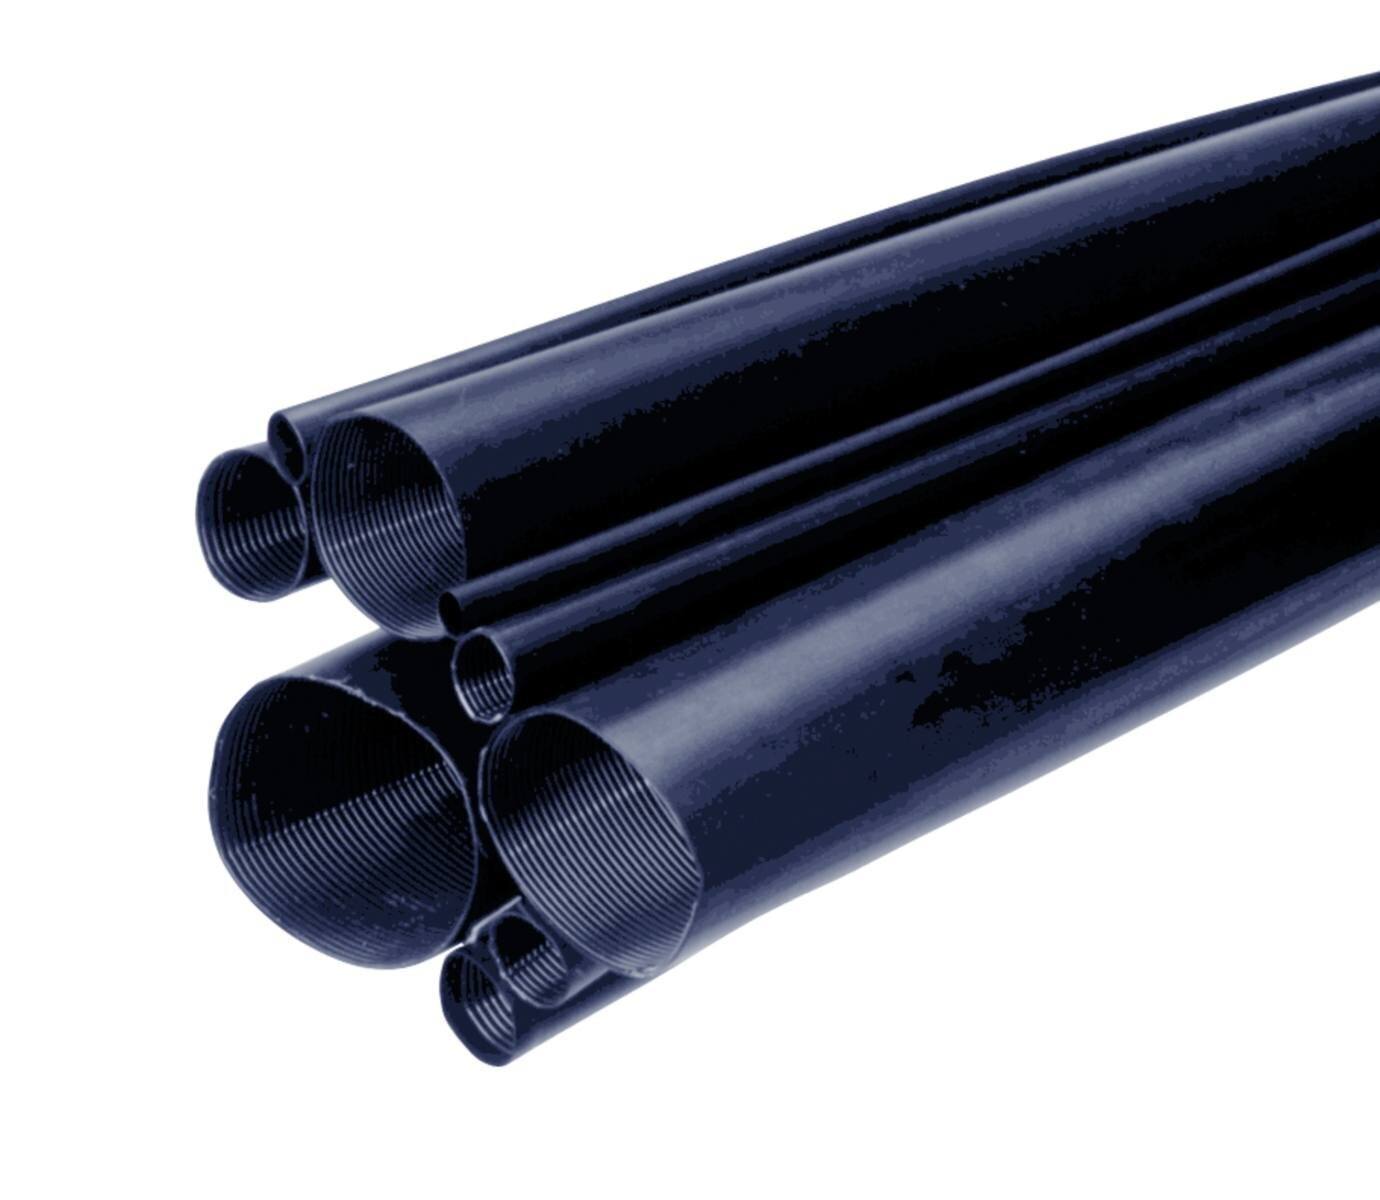 3M MDT-A Tubo termorretráctil de pared media con adhesivo, negro, 12/3 mm, 1 m